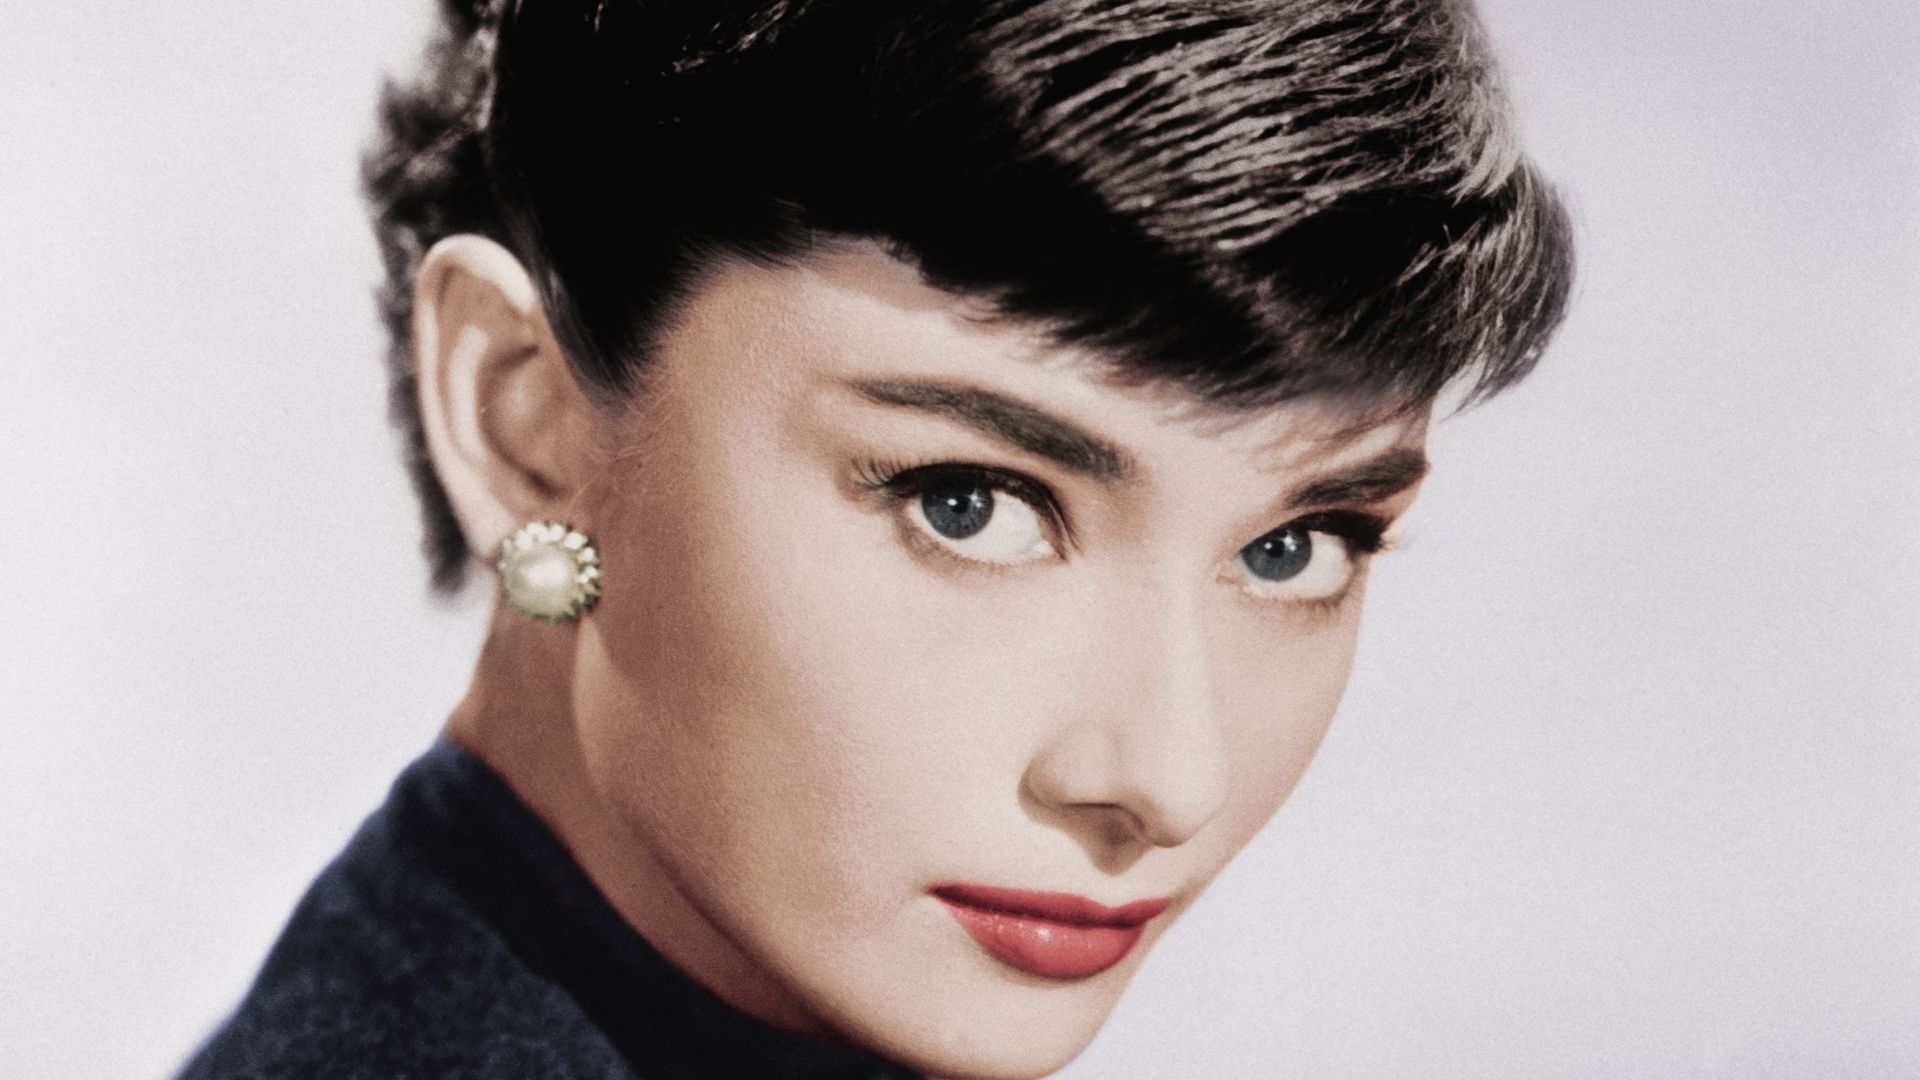 Portrait of Actress Audrey Hepburn